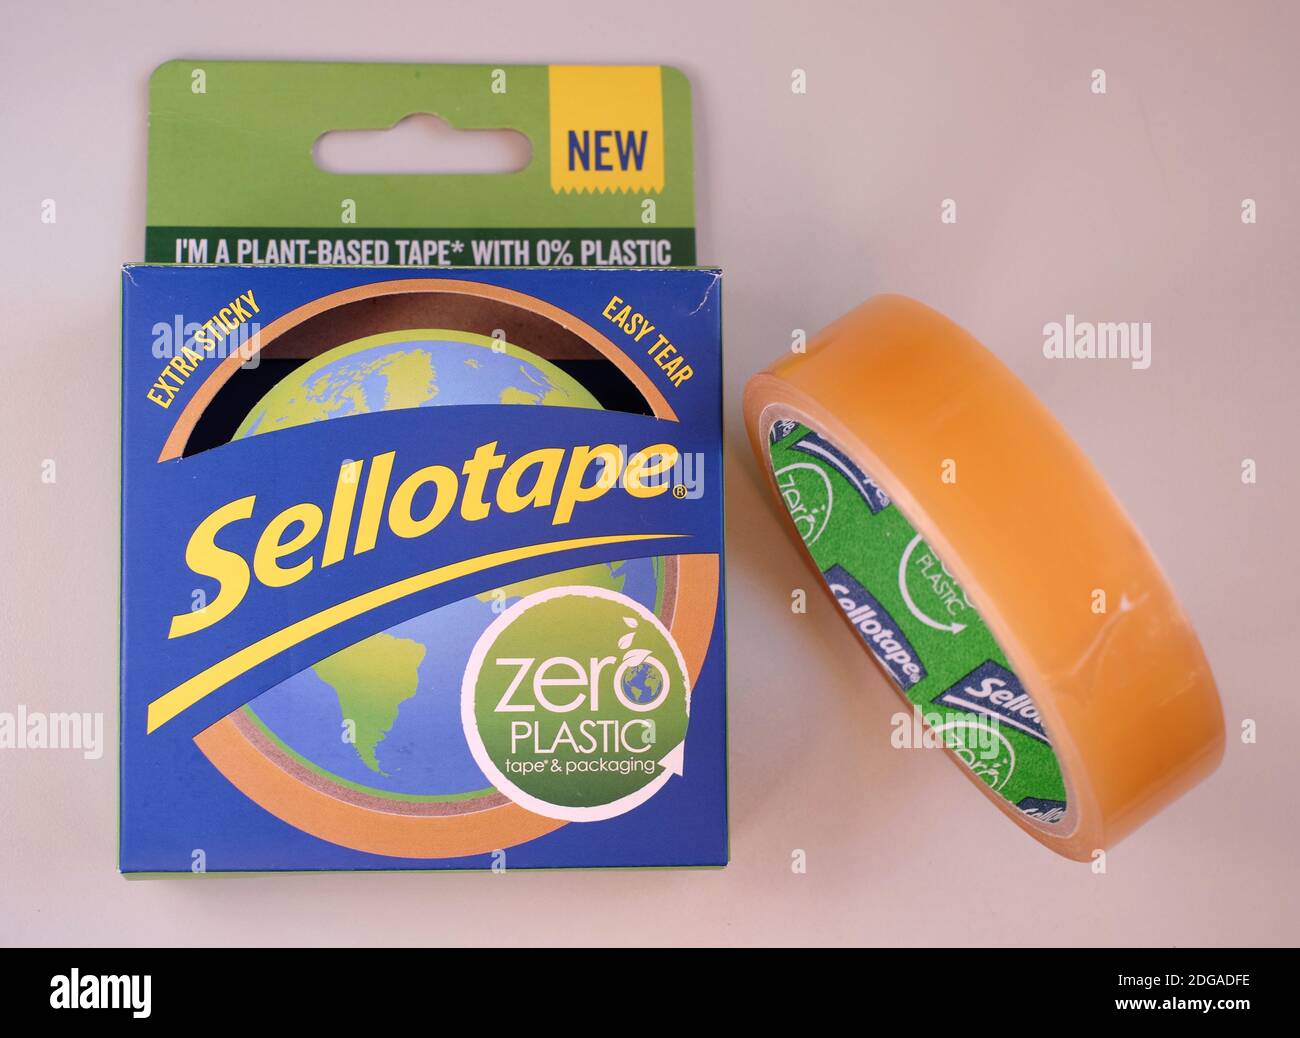 Cero plástico Sellotape hecho de celulosa y pegamento natural. Un ejemplo de un producto rediseñado para ser más sostenible y ecológico. Foto de stock